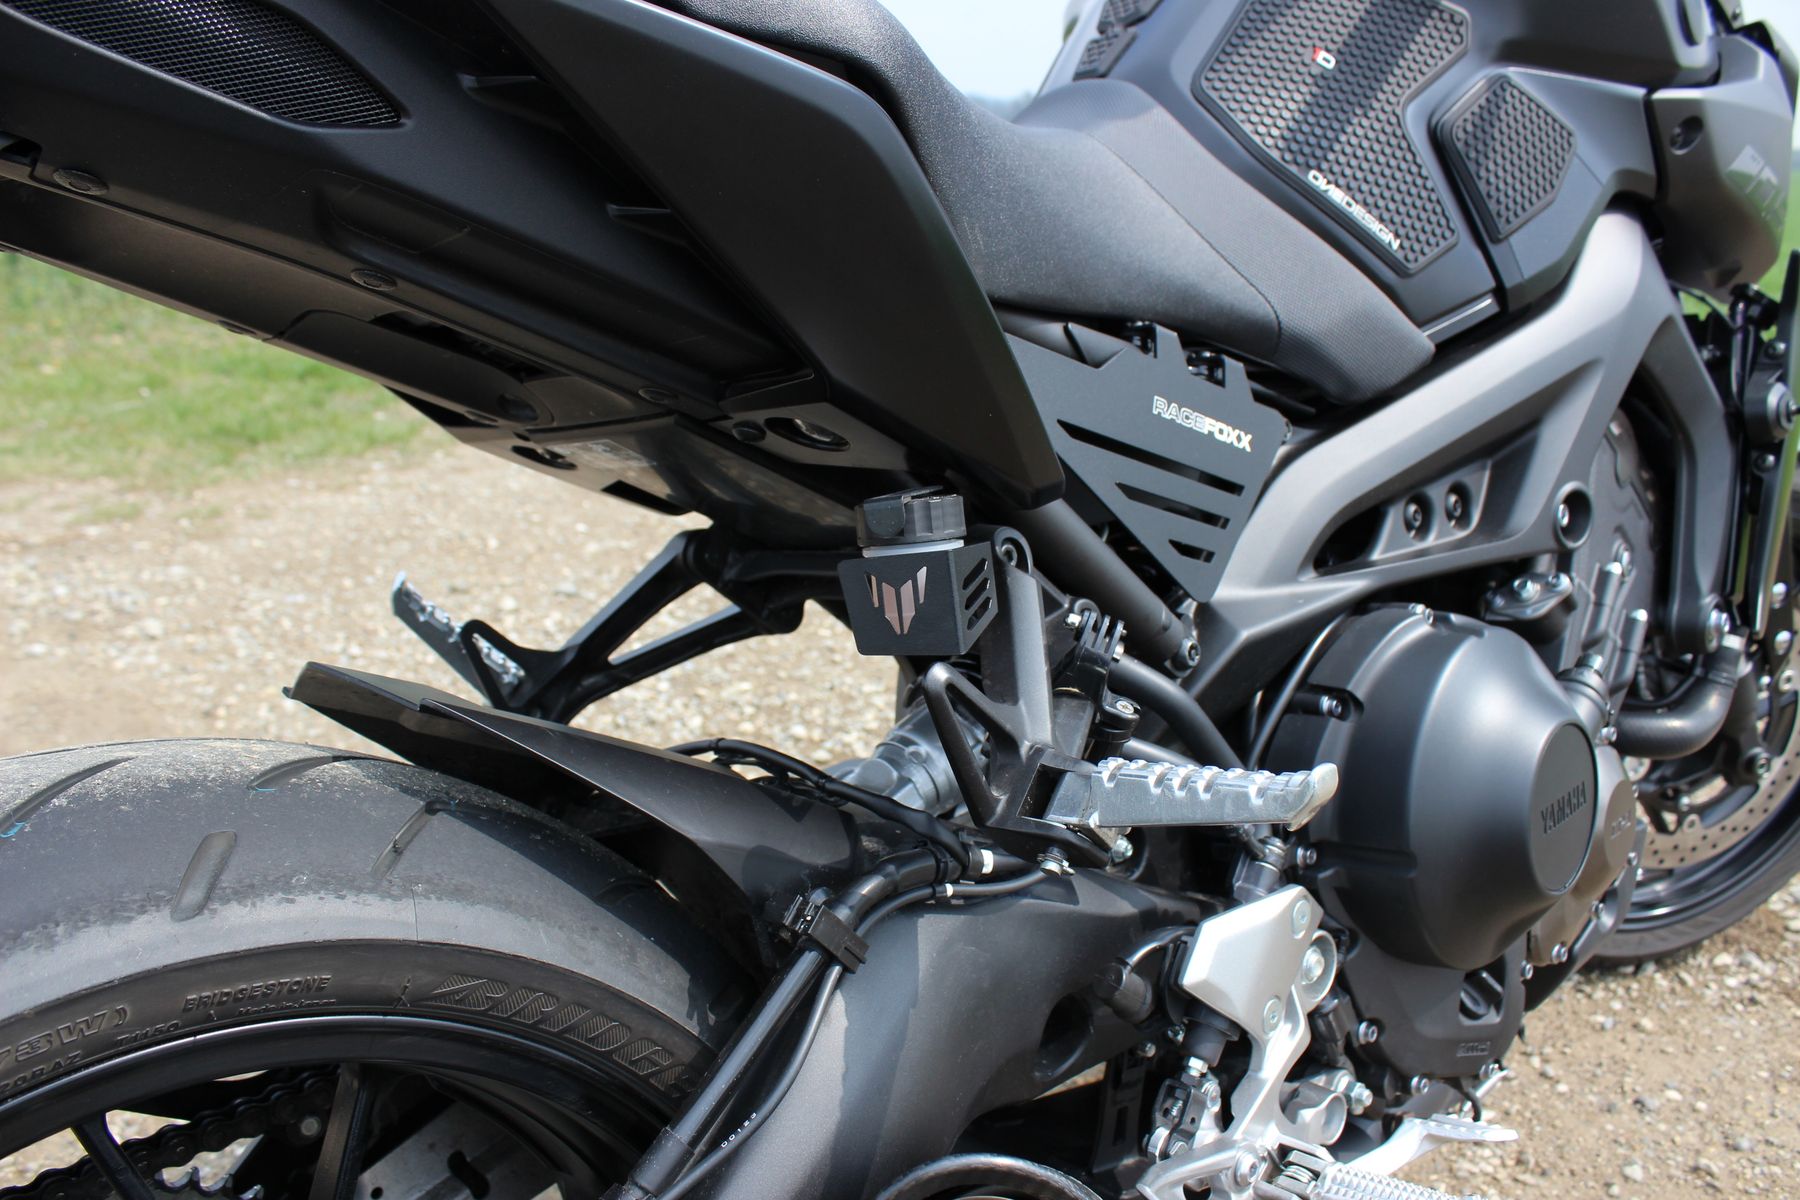 WEIDUBAIHUO Motorrad Hinterer Bremsflüssigkeitsbehälter Schutzabdeckung Schutz Für Y&amaha MT09 MT-09 FJ-09 FZ-09 XSR900 XSR700 Für T&Racer 900 700 Farbe : FJ09 1 